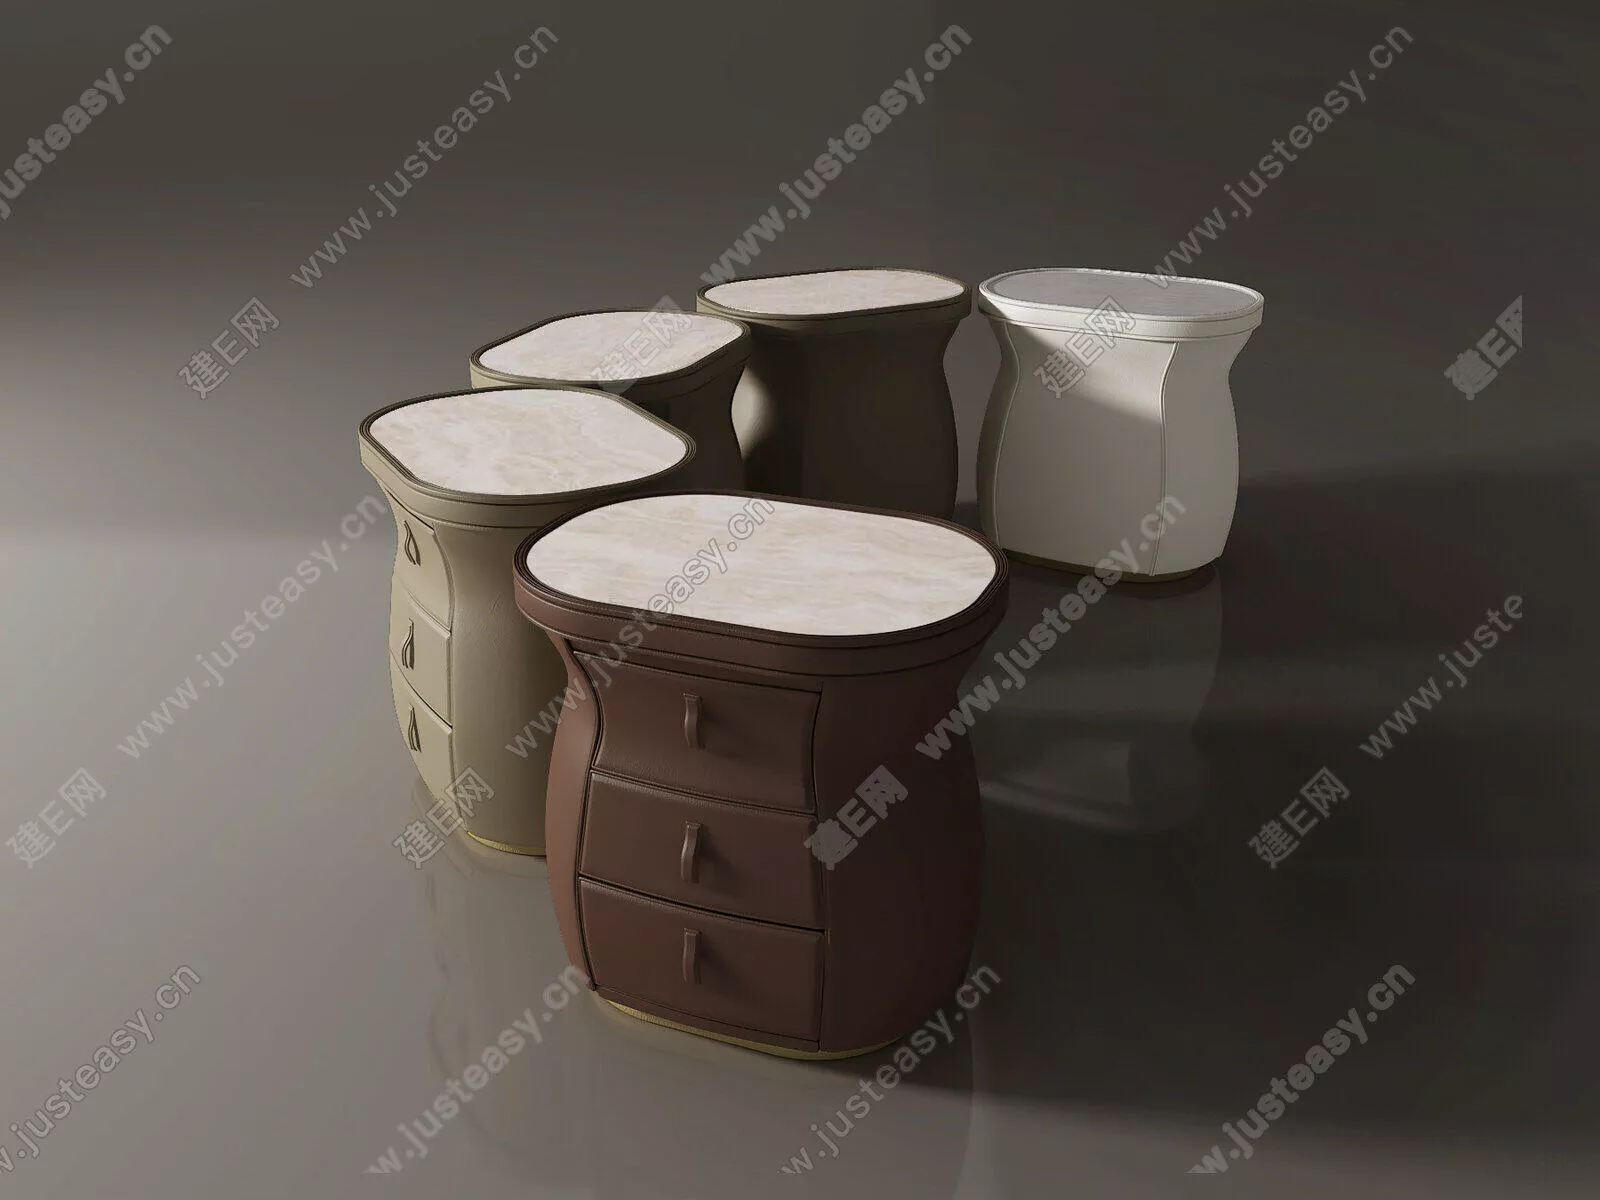 MODERN BEDSIDE TABLE - SKETCHUP 3D MODEL - ENSCAPE - 111037925